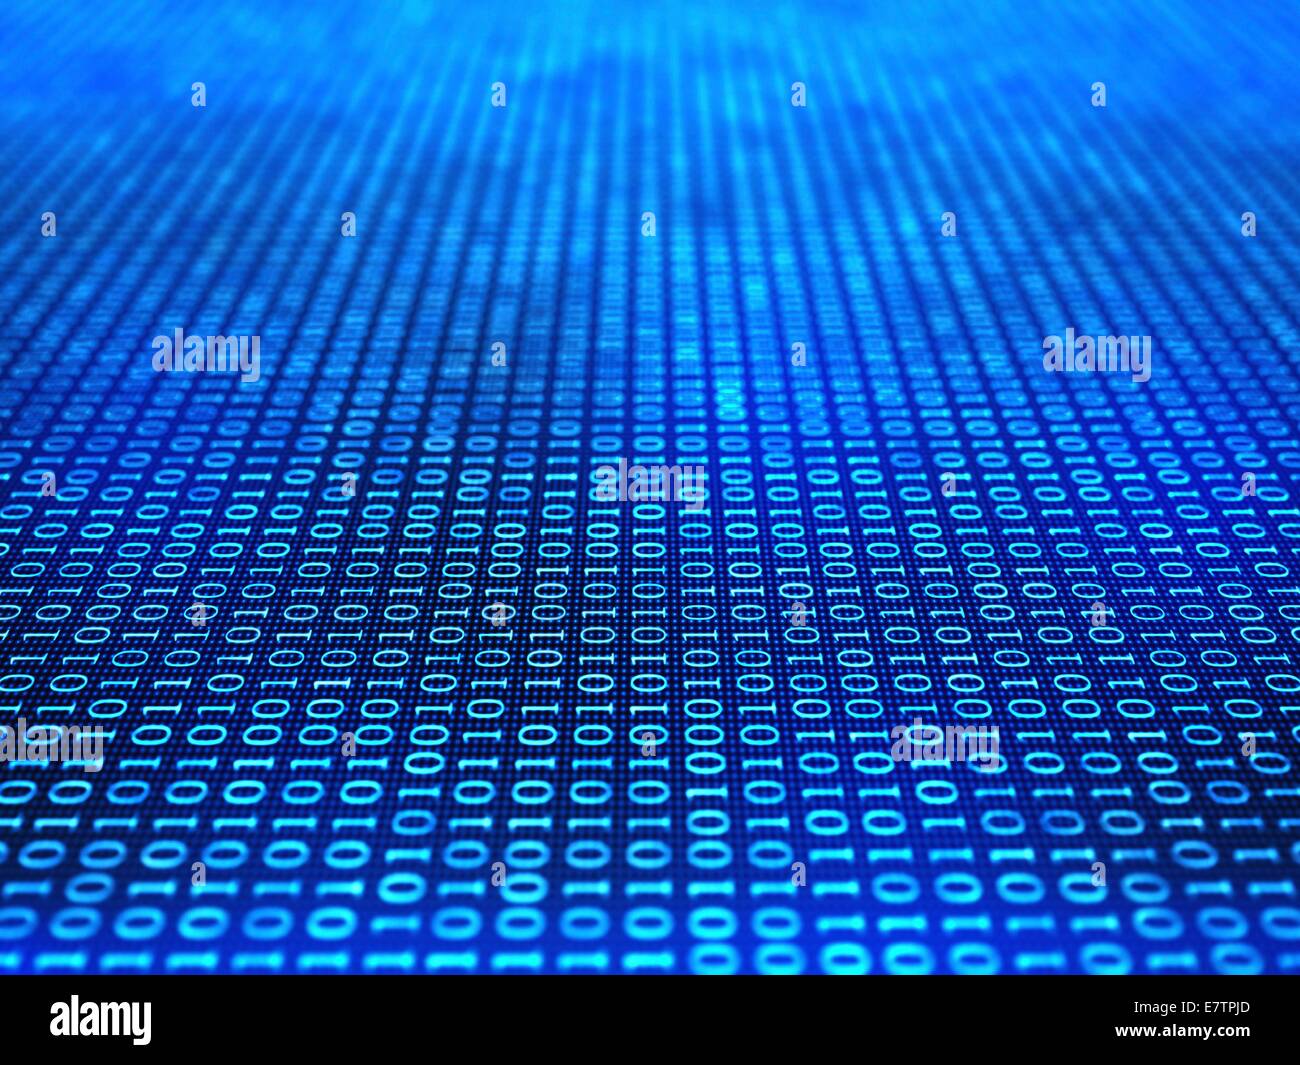 Binary code, computer artwork. Stock Photo